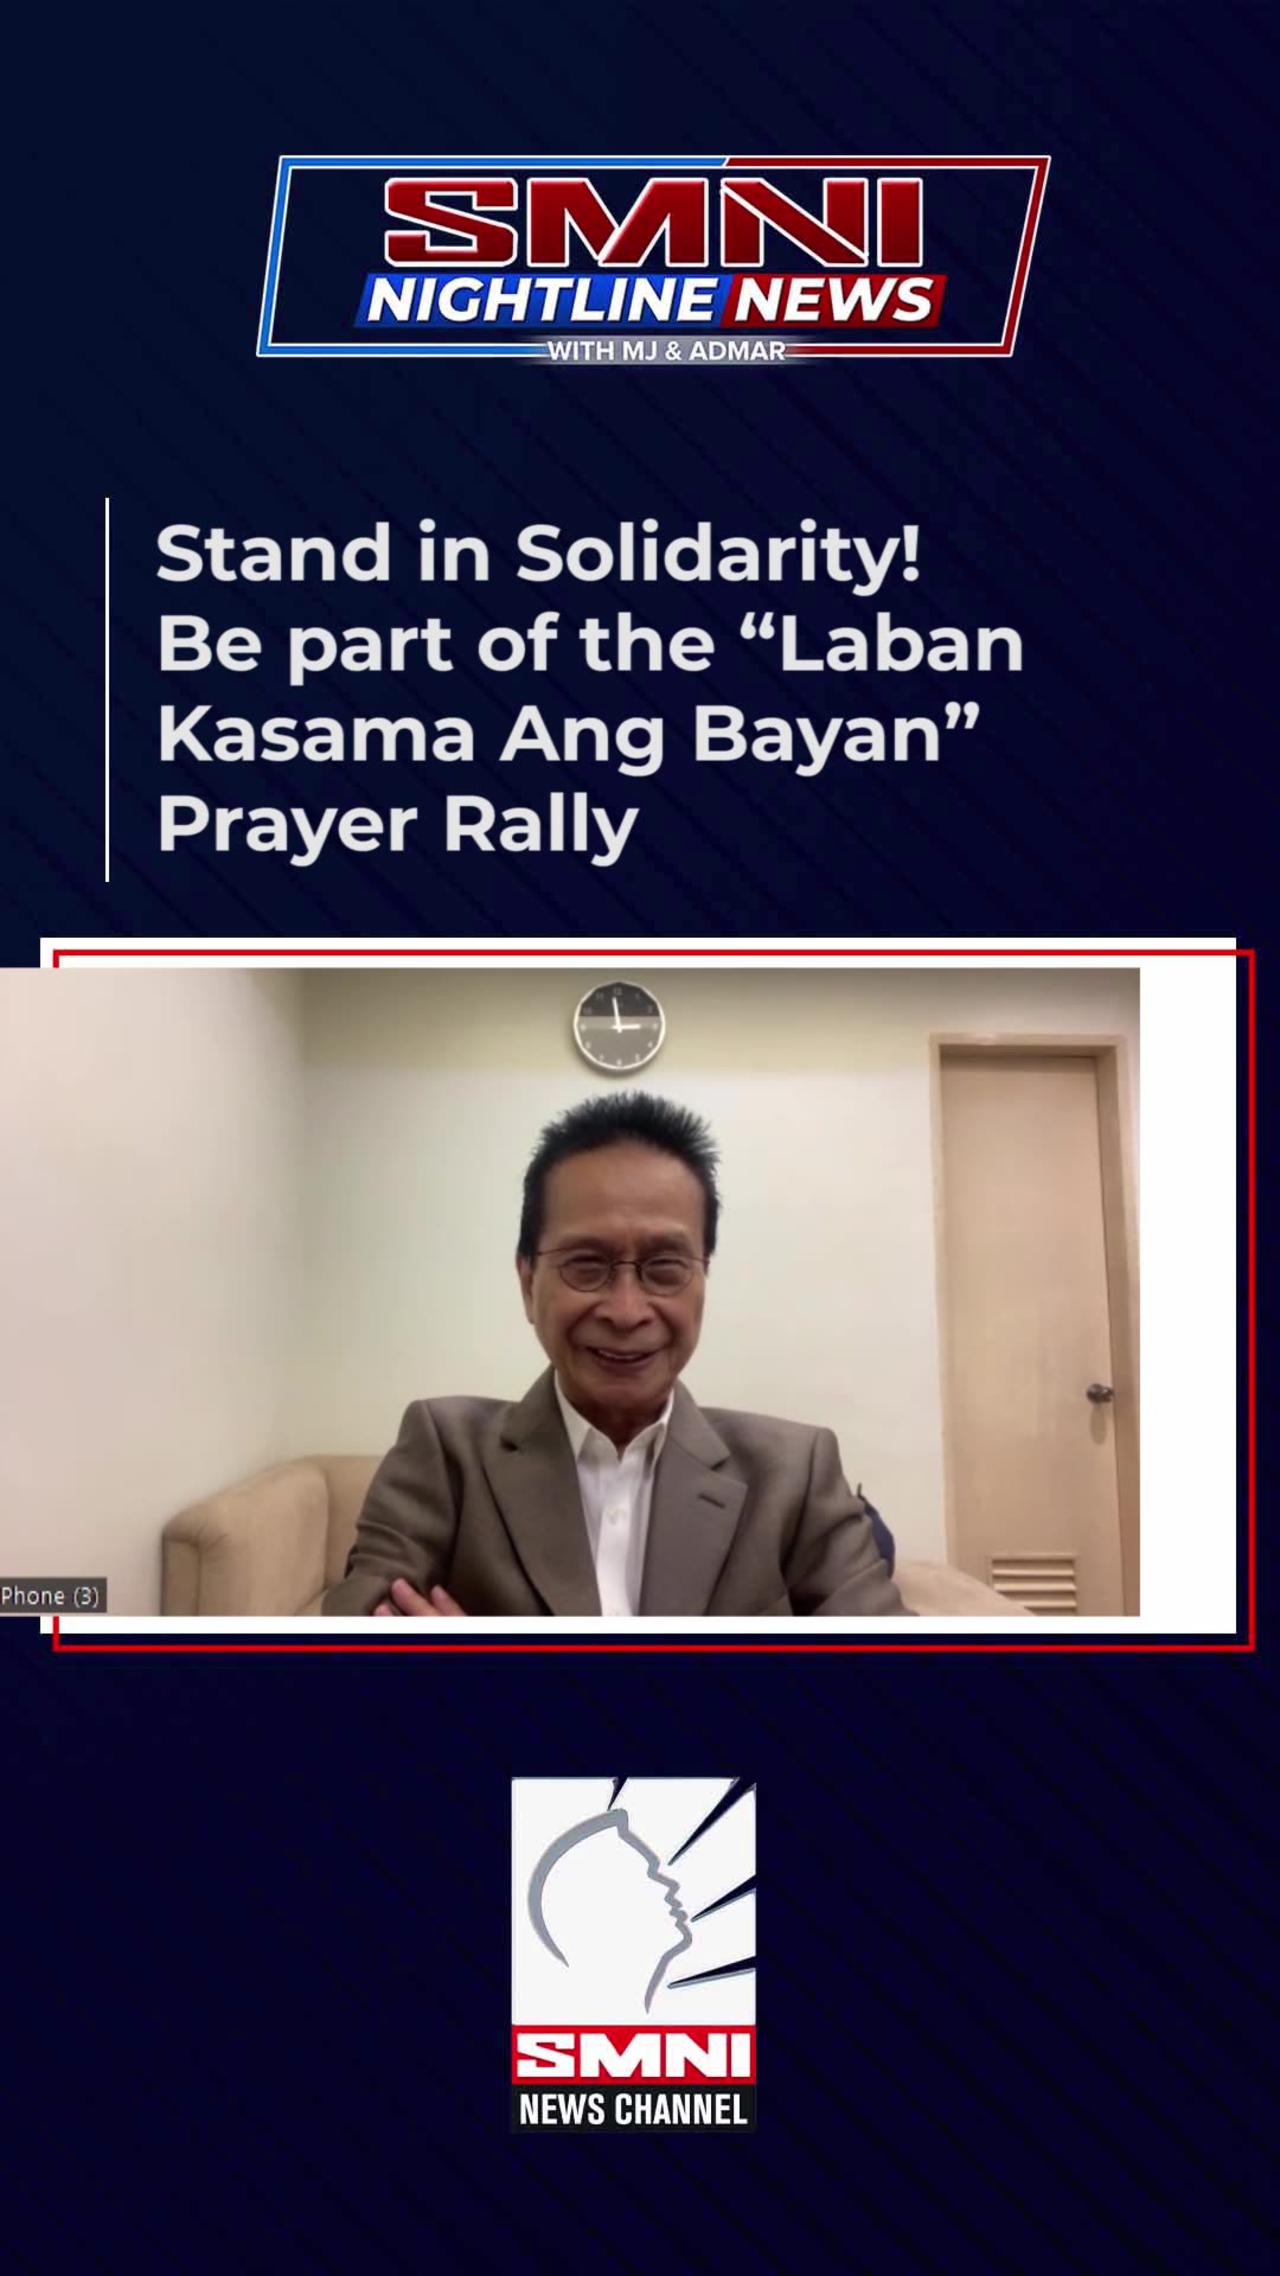 Stand in solidarity! Be part of the "Laban Kasama Ang Bayan" Prayer Rally